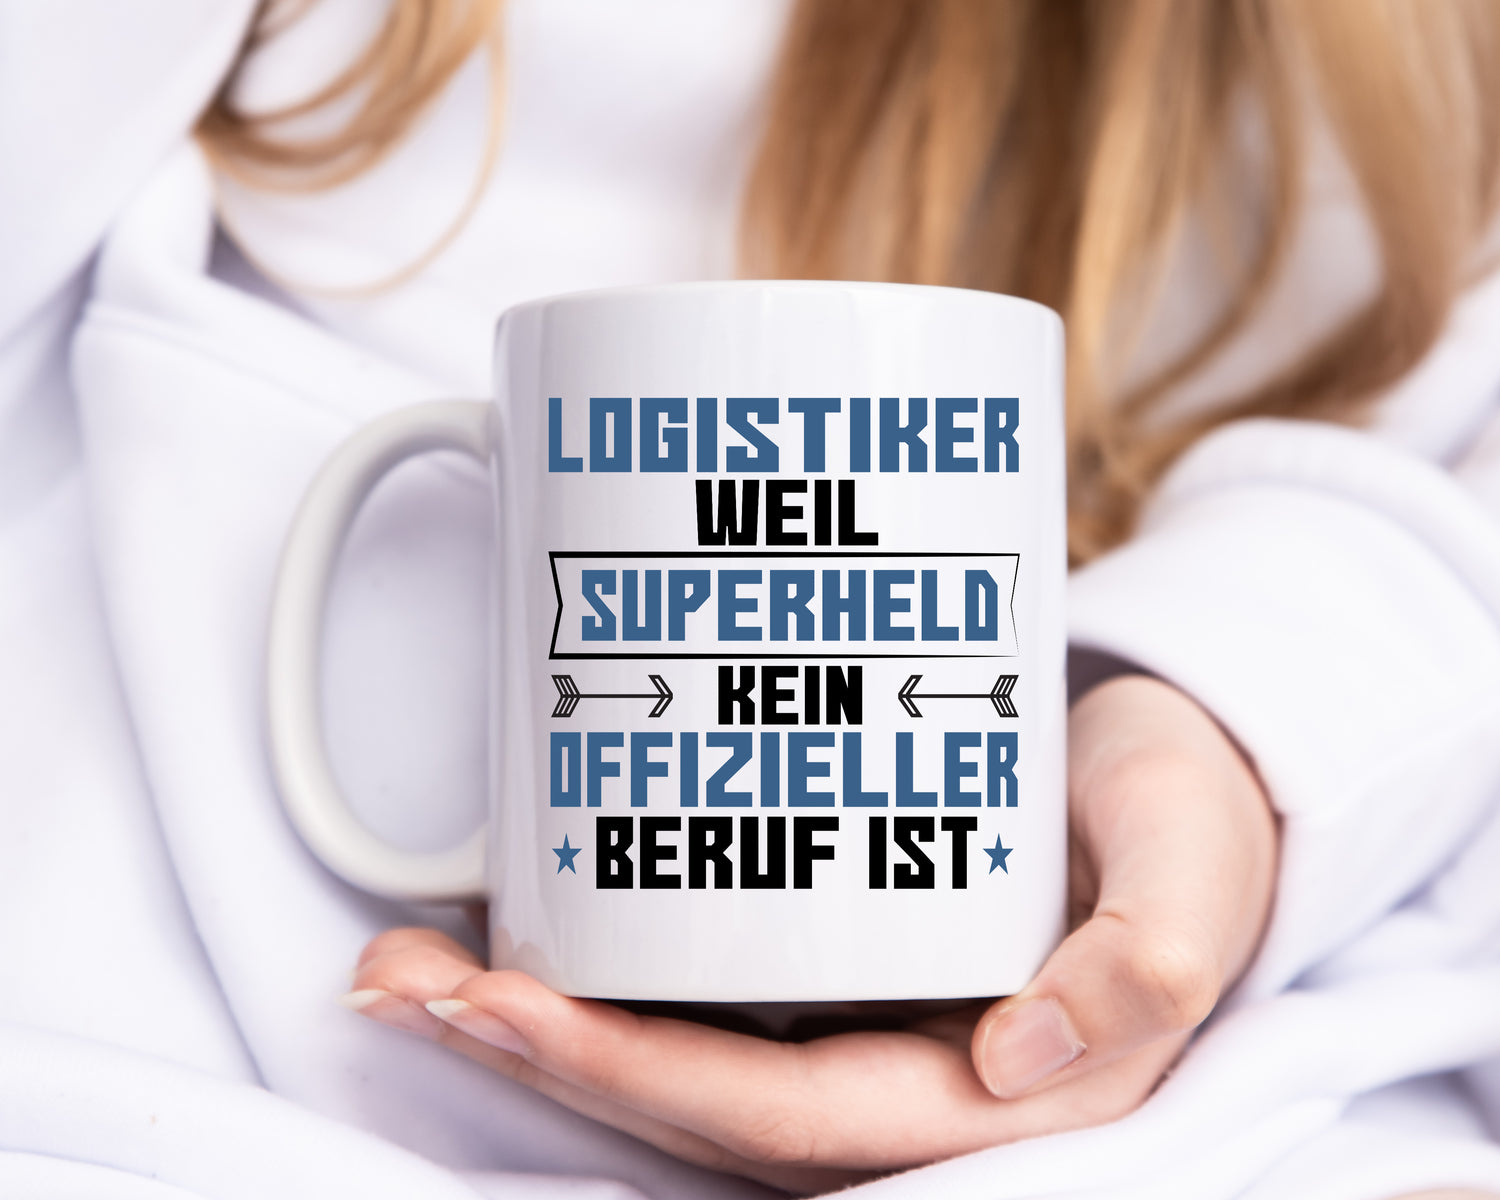 Superheld Logistiker | Beruf Logistik - Tasse Weiß - Kaffeetasse / Geschenk / Familie